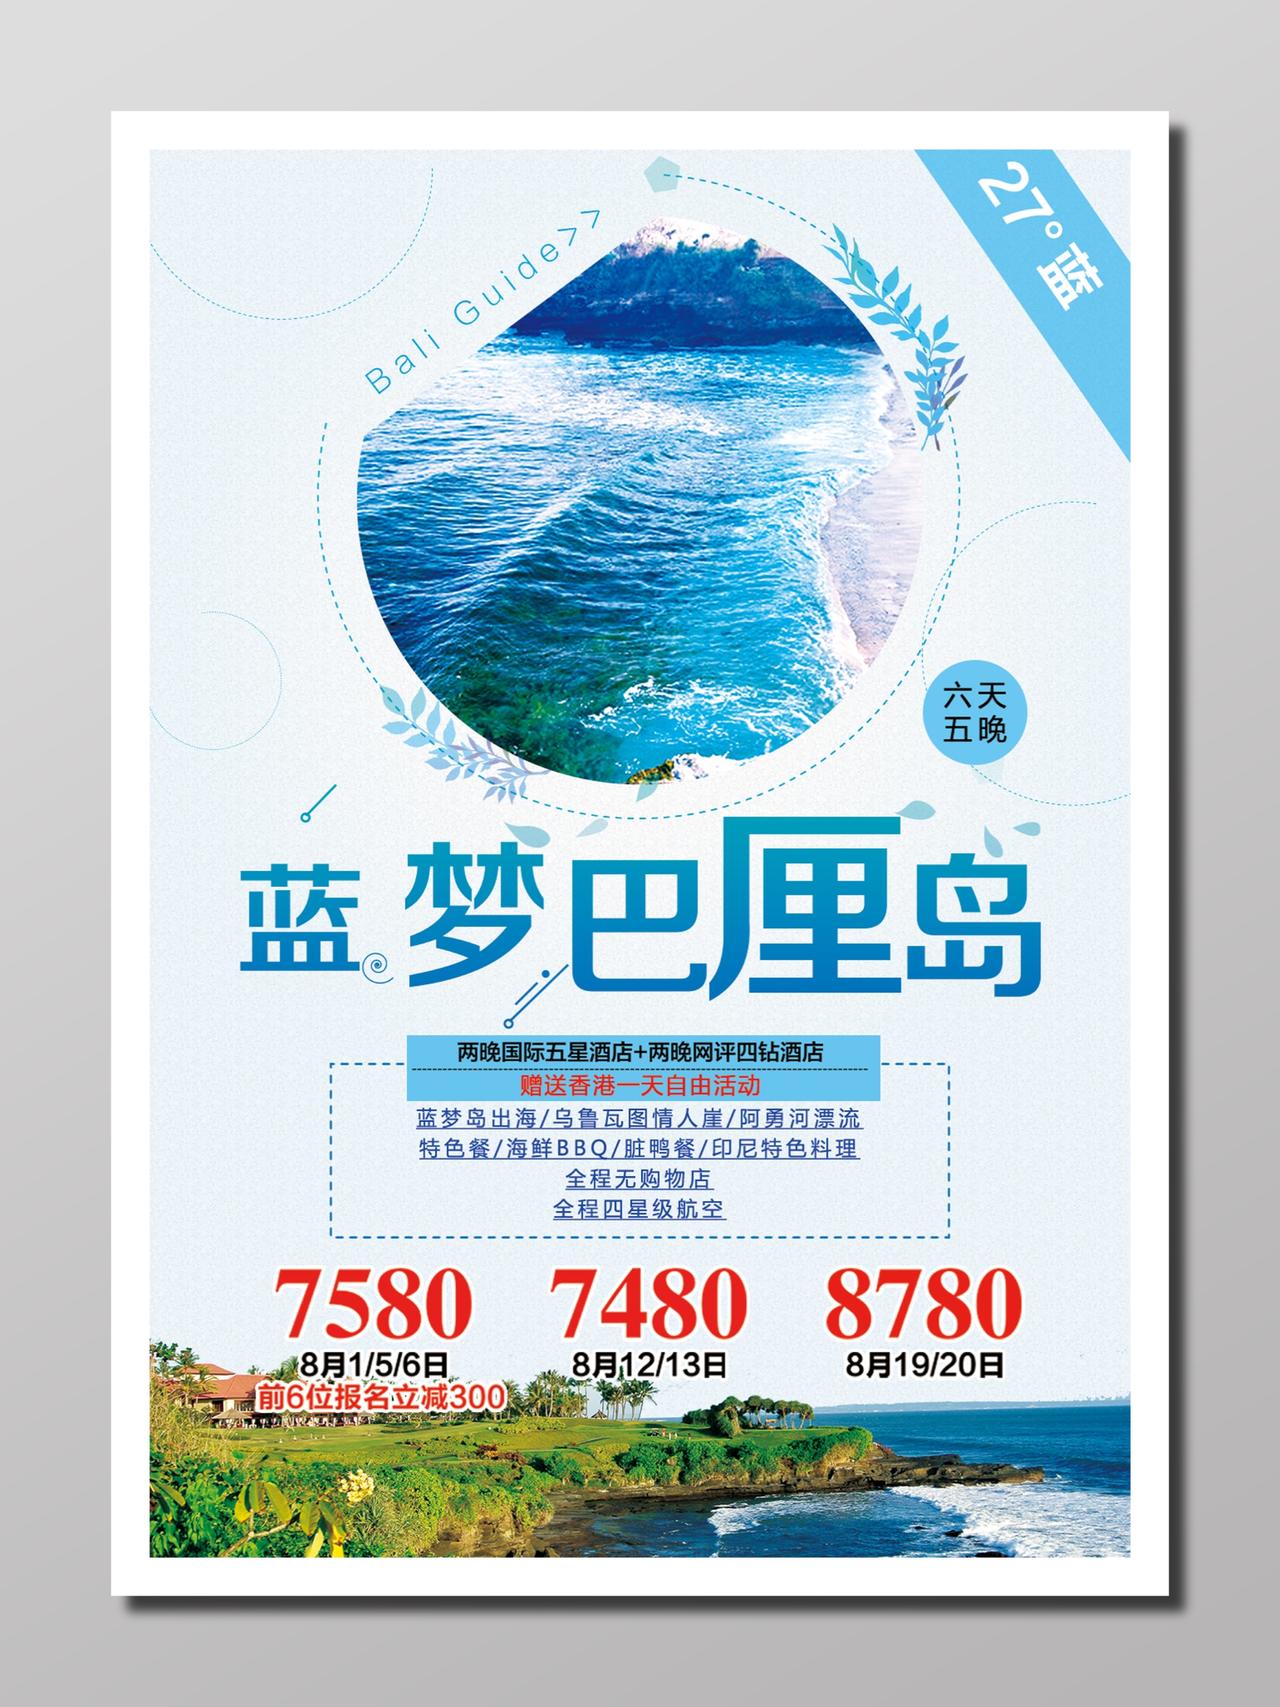 旅游巴厘岛旅行宣传蓝色白色清凉梦幻岛屿旅游旅游报价海报设计